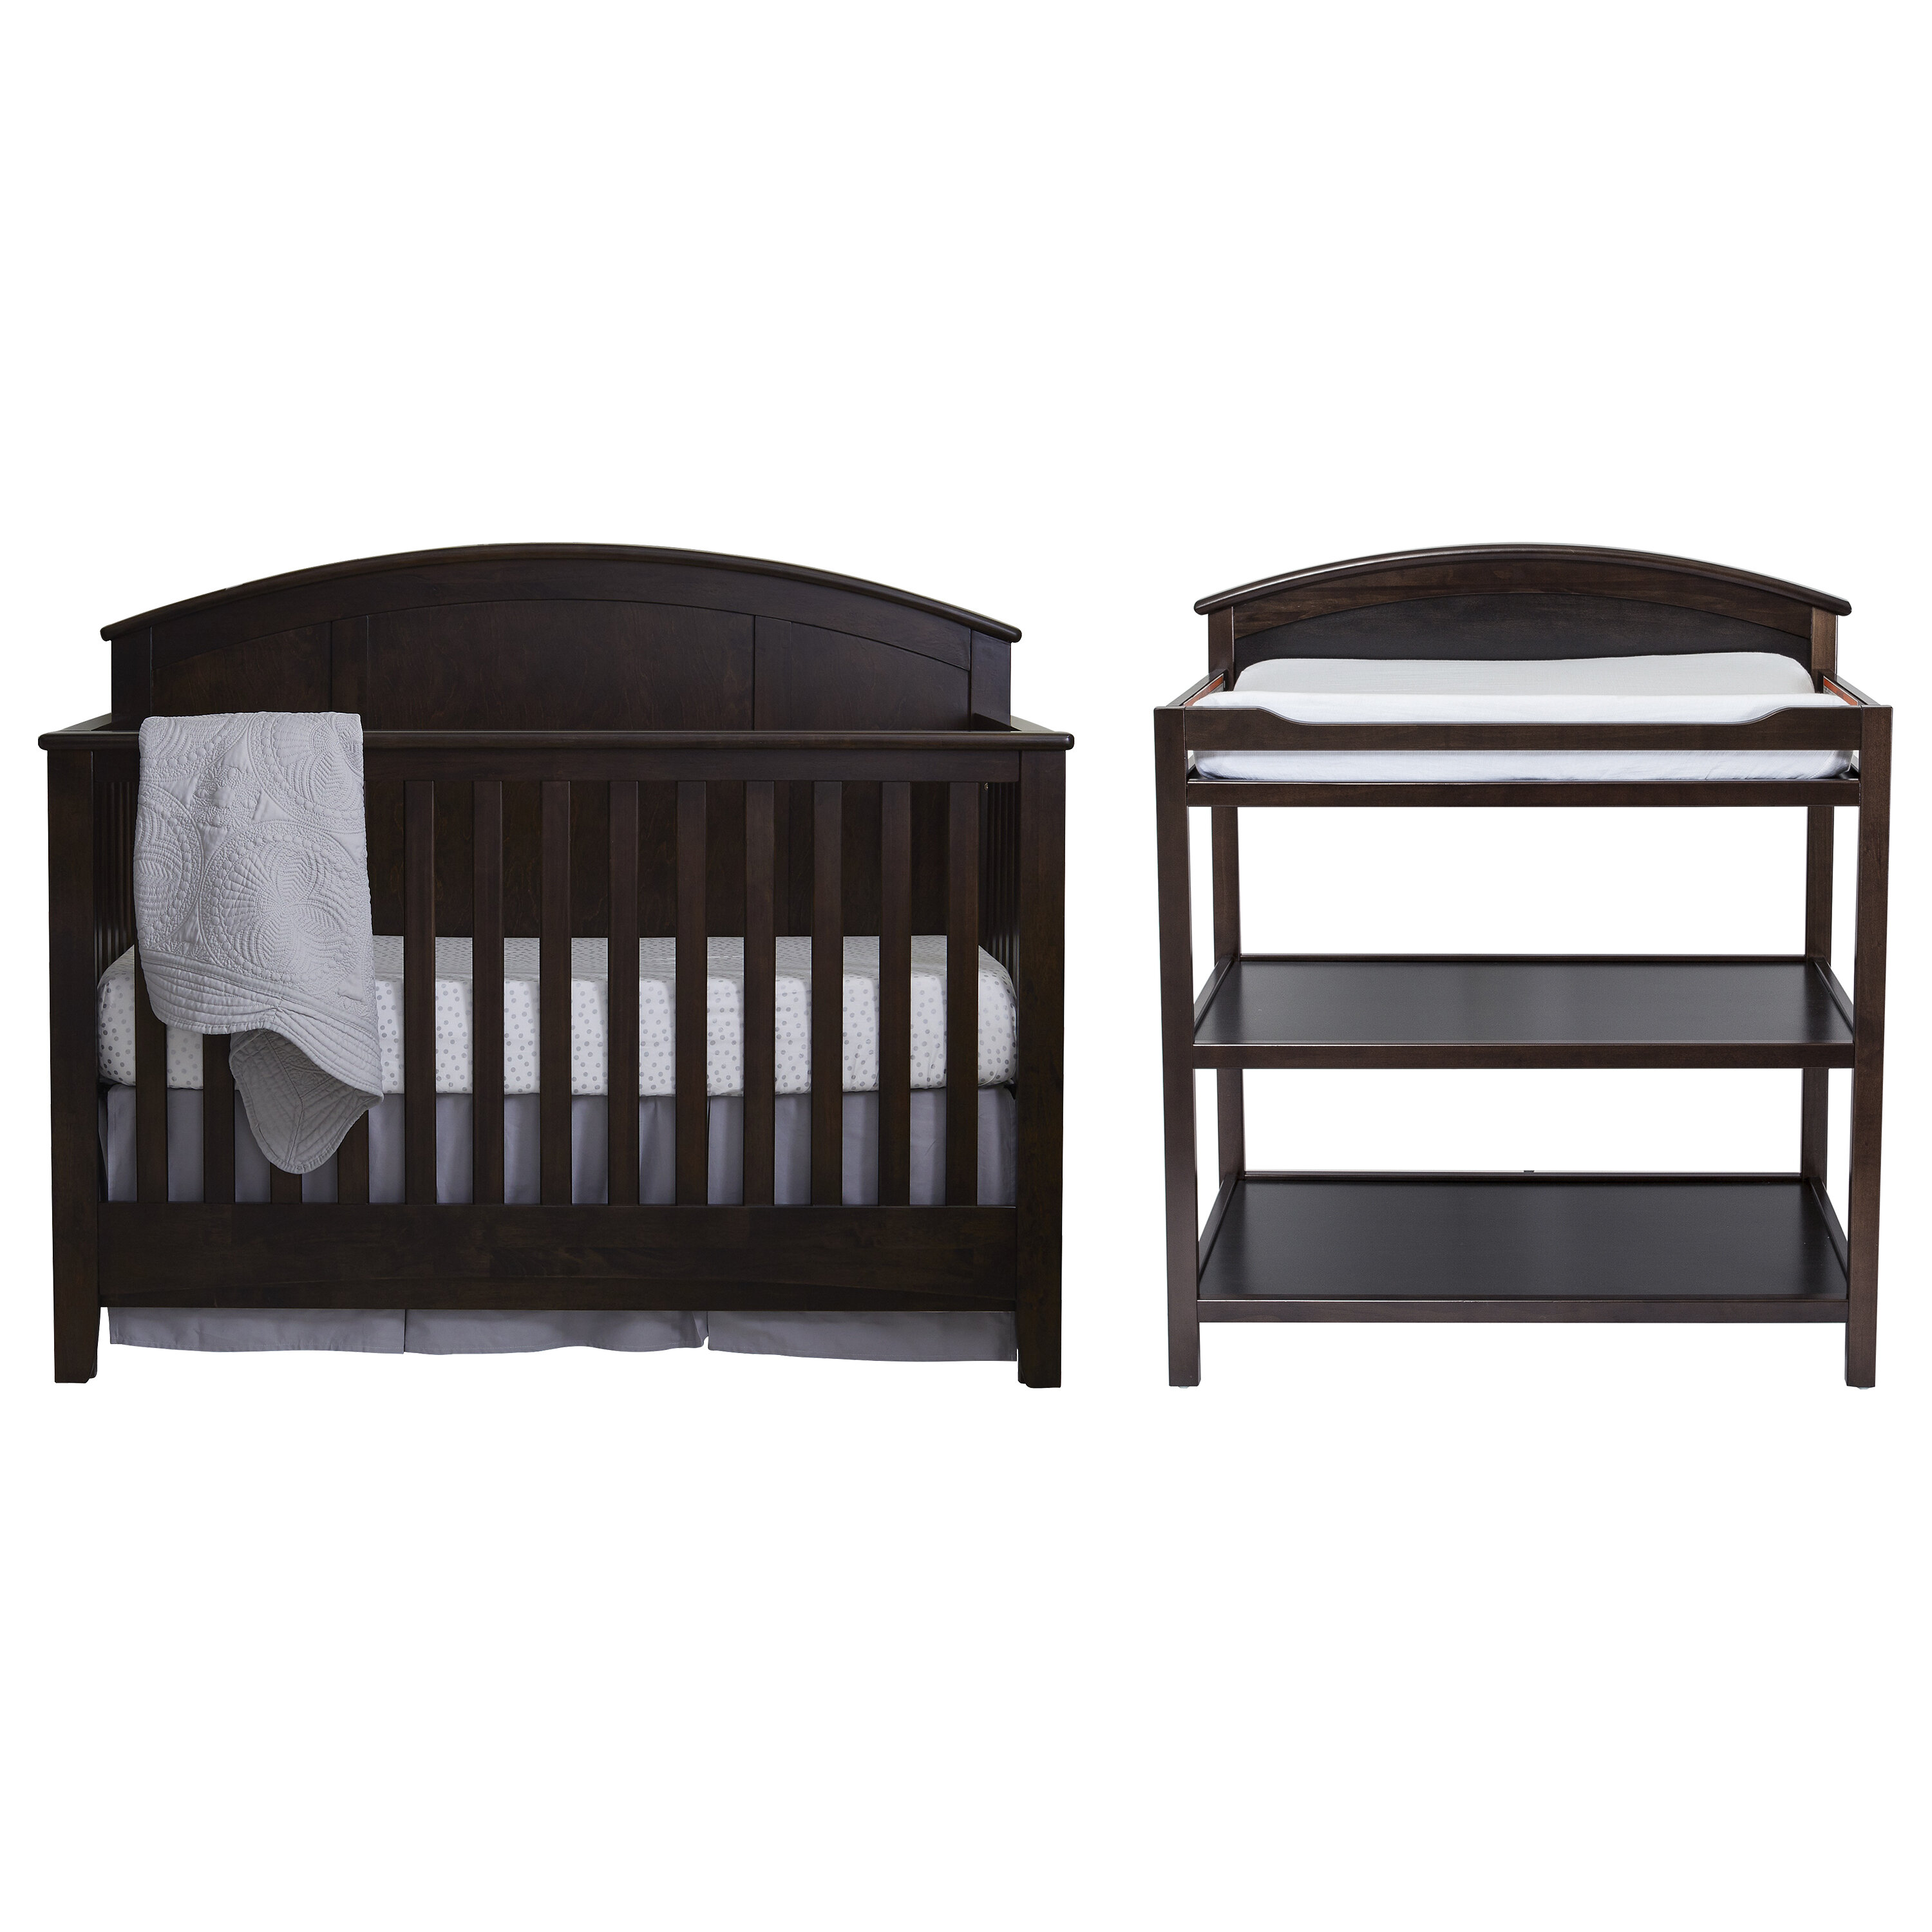 matching baby furniture sets